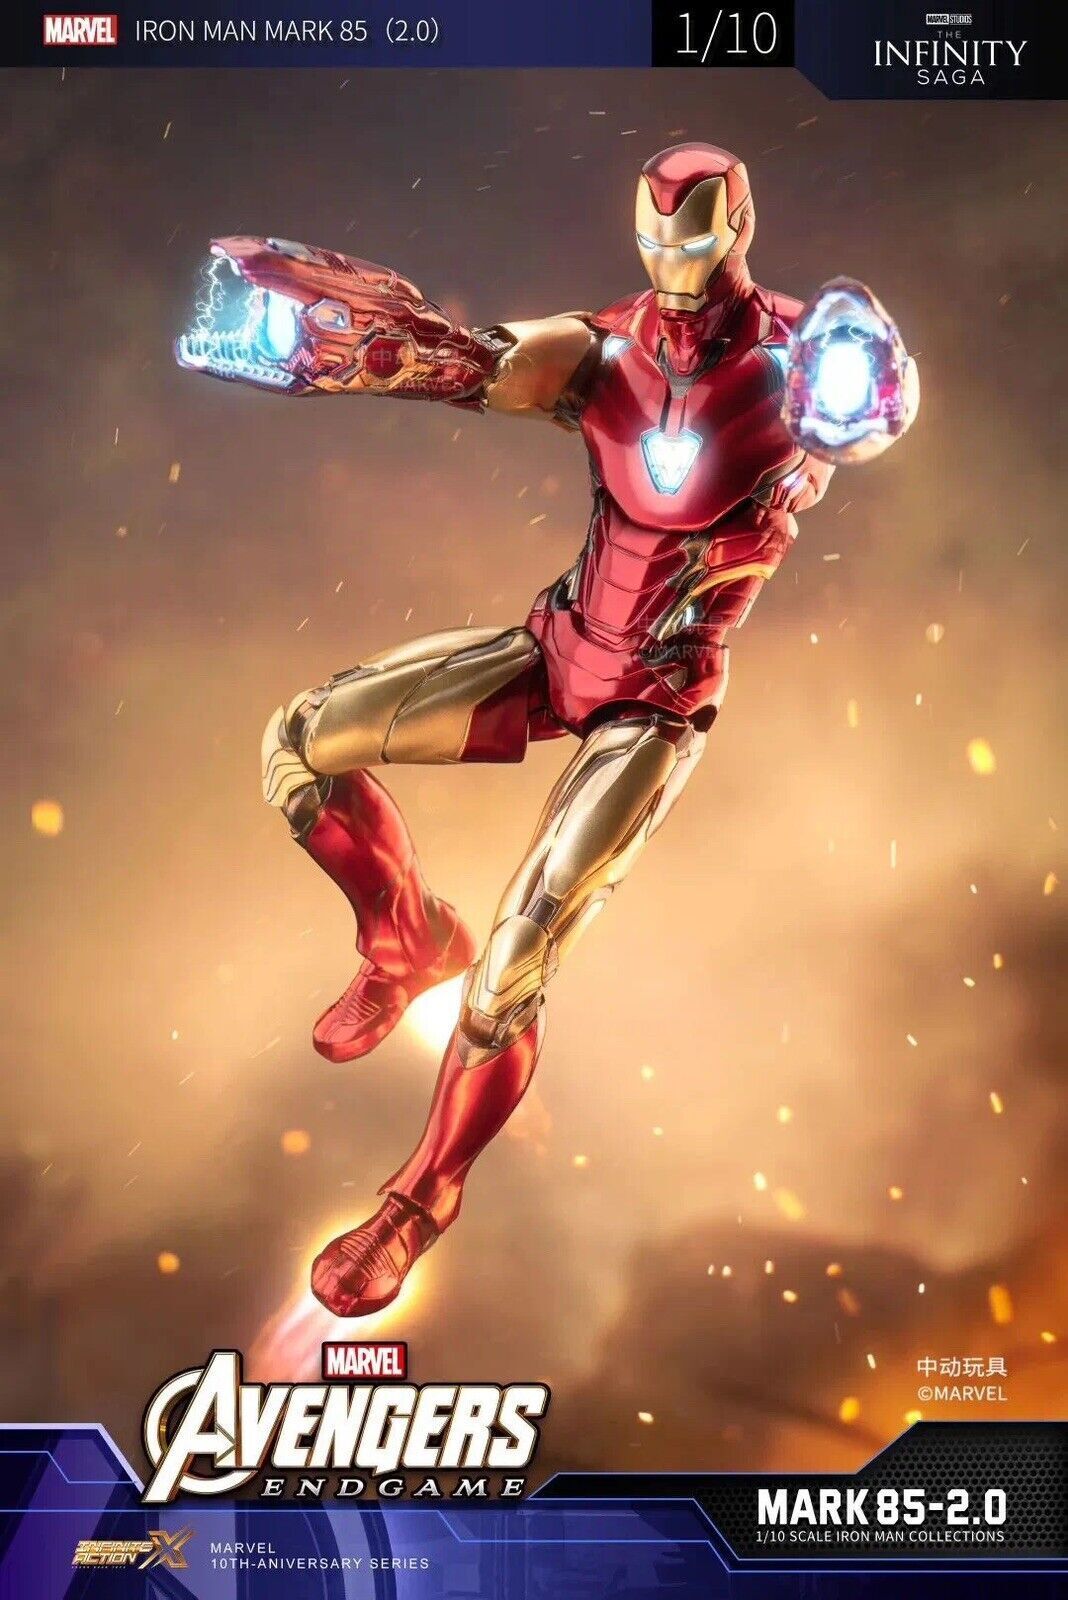 NEW zd toys iron man mark 85 2.0 ver. mk85 action figure marvel avengers endgame